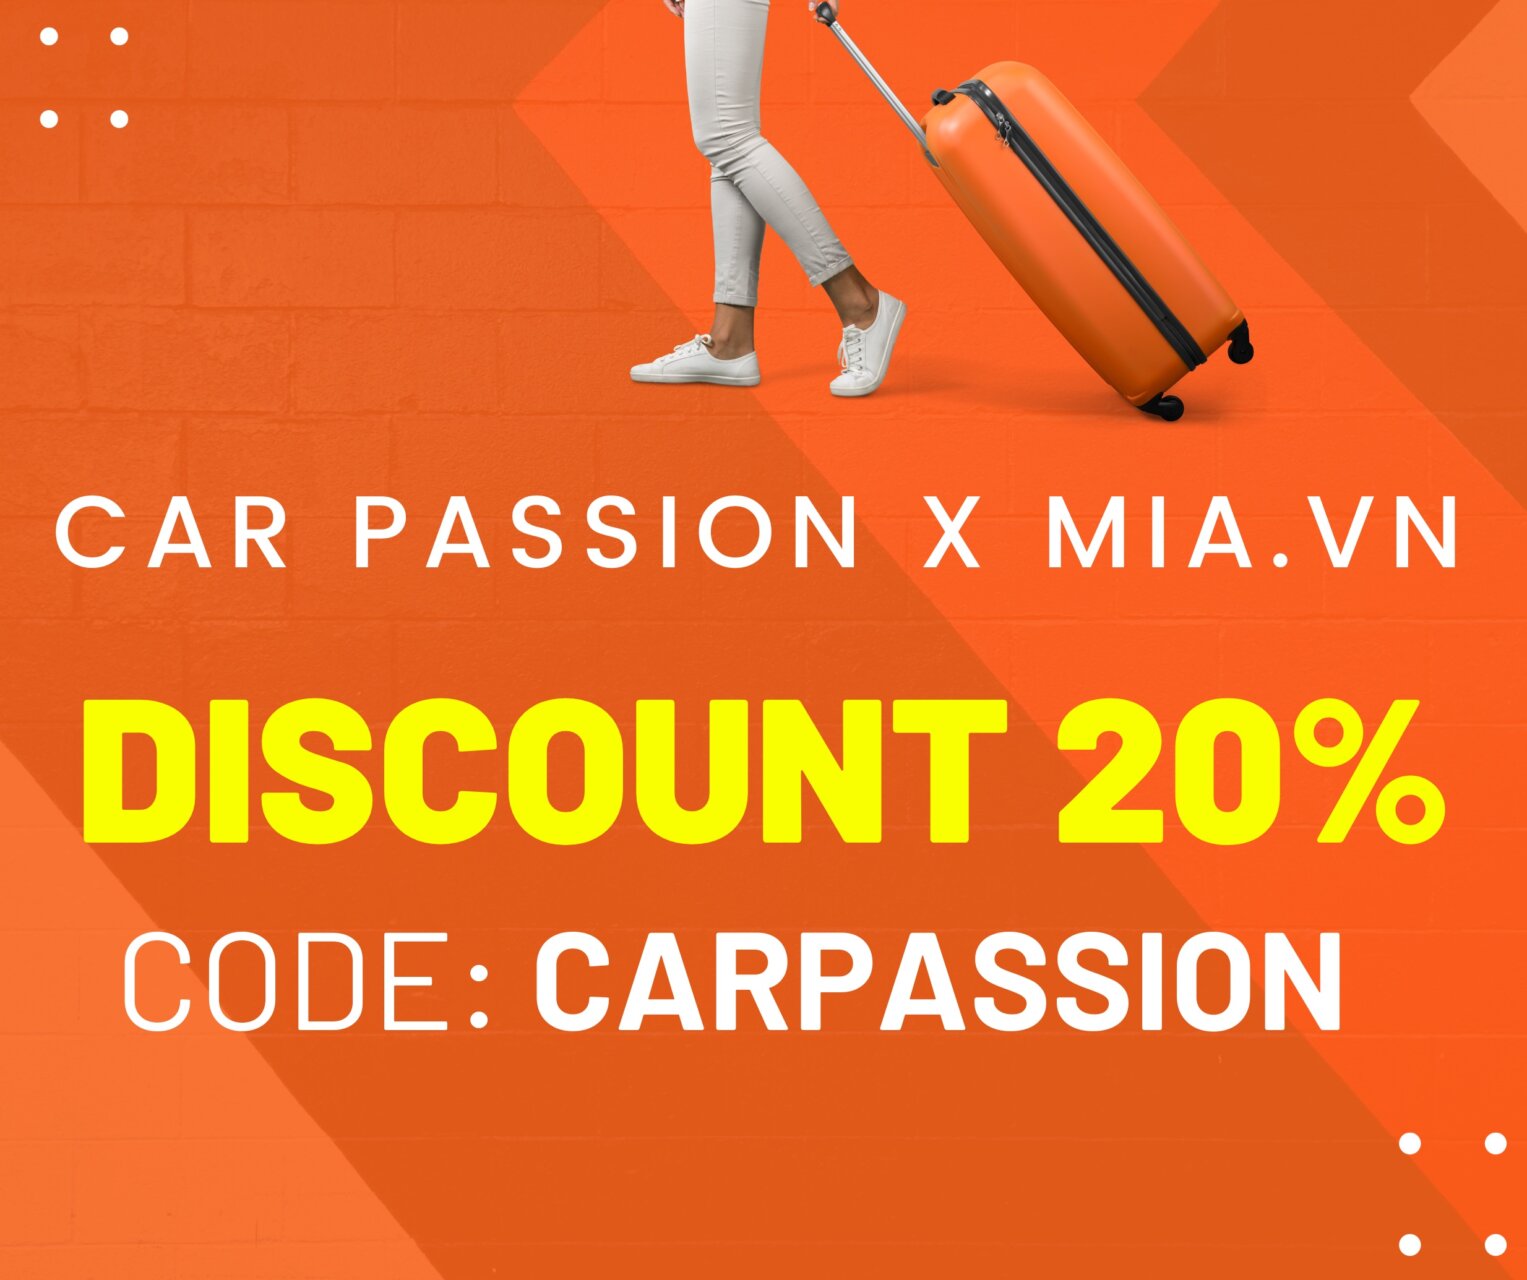 Car Passion kết hợp MIA.vn ưu đãi đặc biệt khi mua vali, balo, túi xách, phụ kiện du lịch
